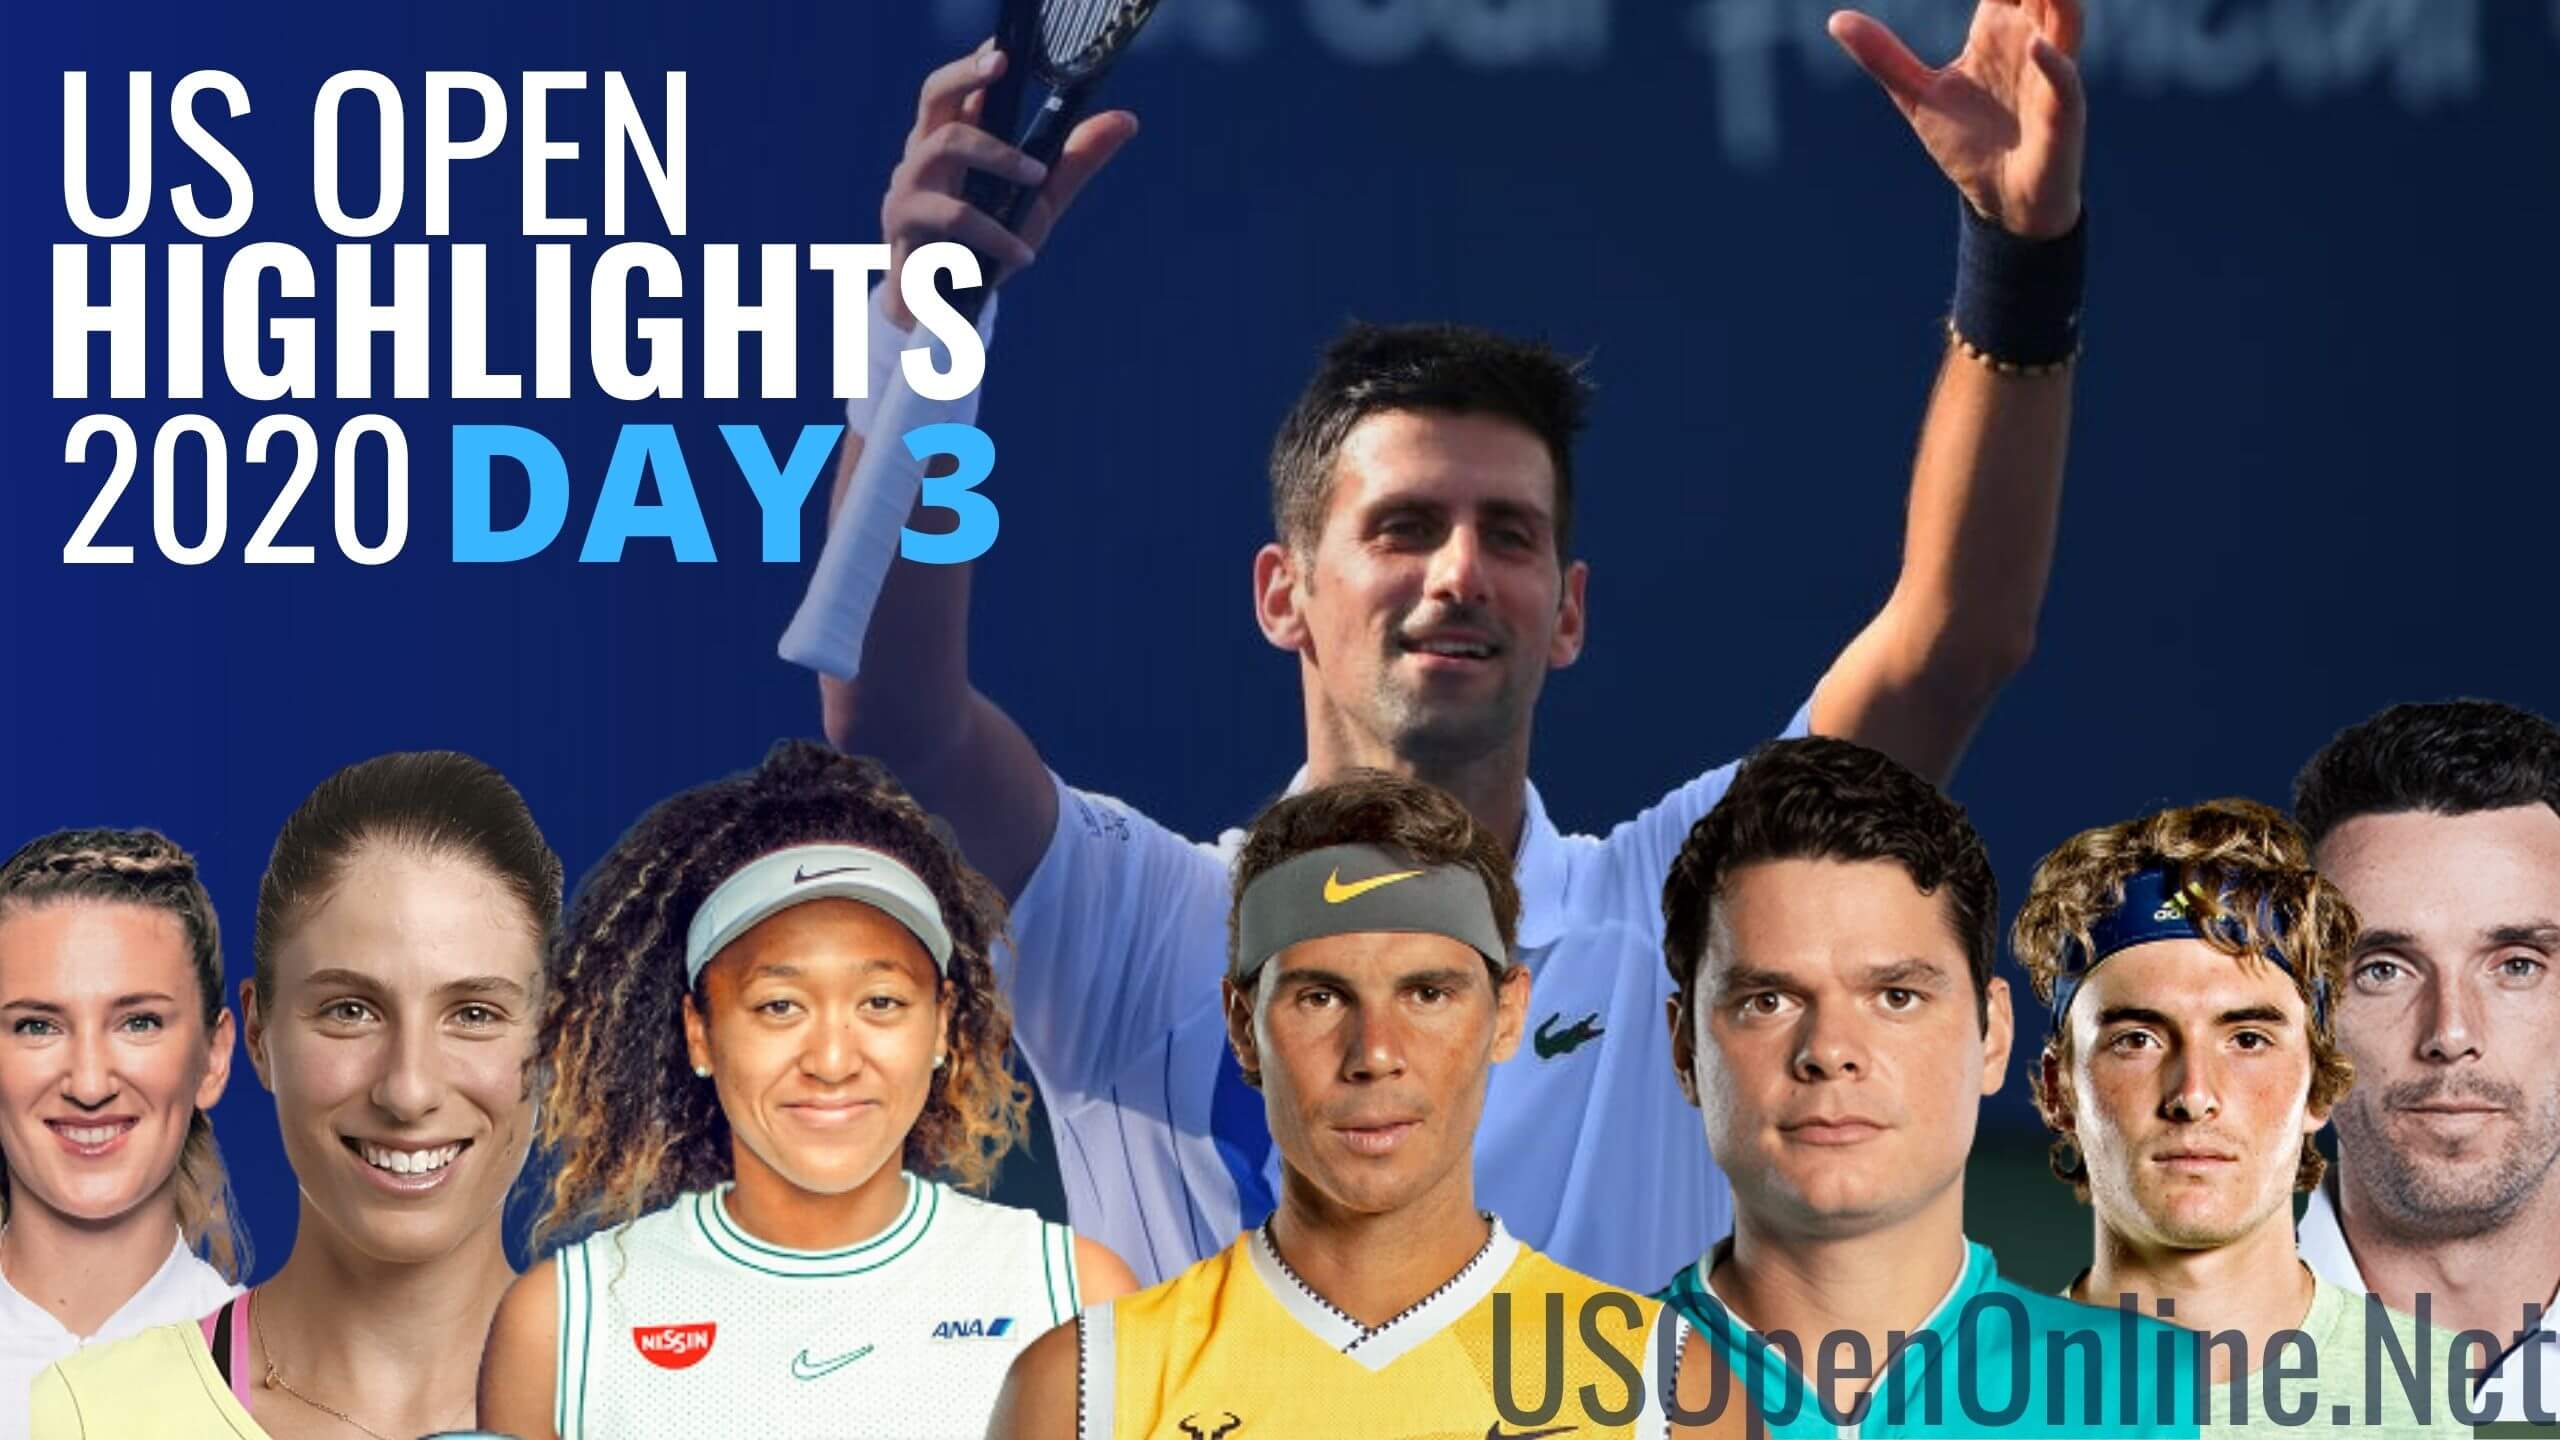 US Open Tennis 2020 Day 3 Match Highlights